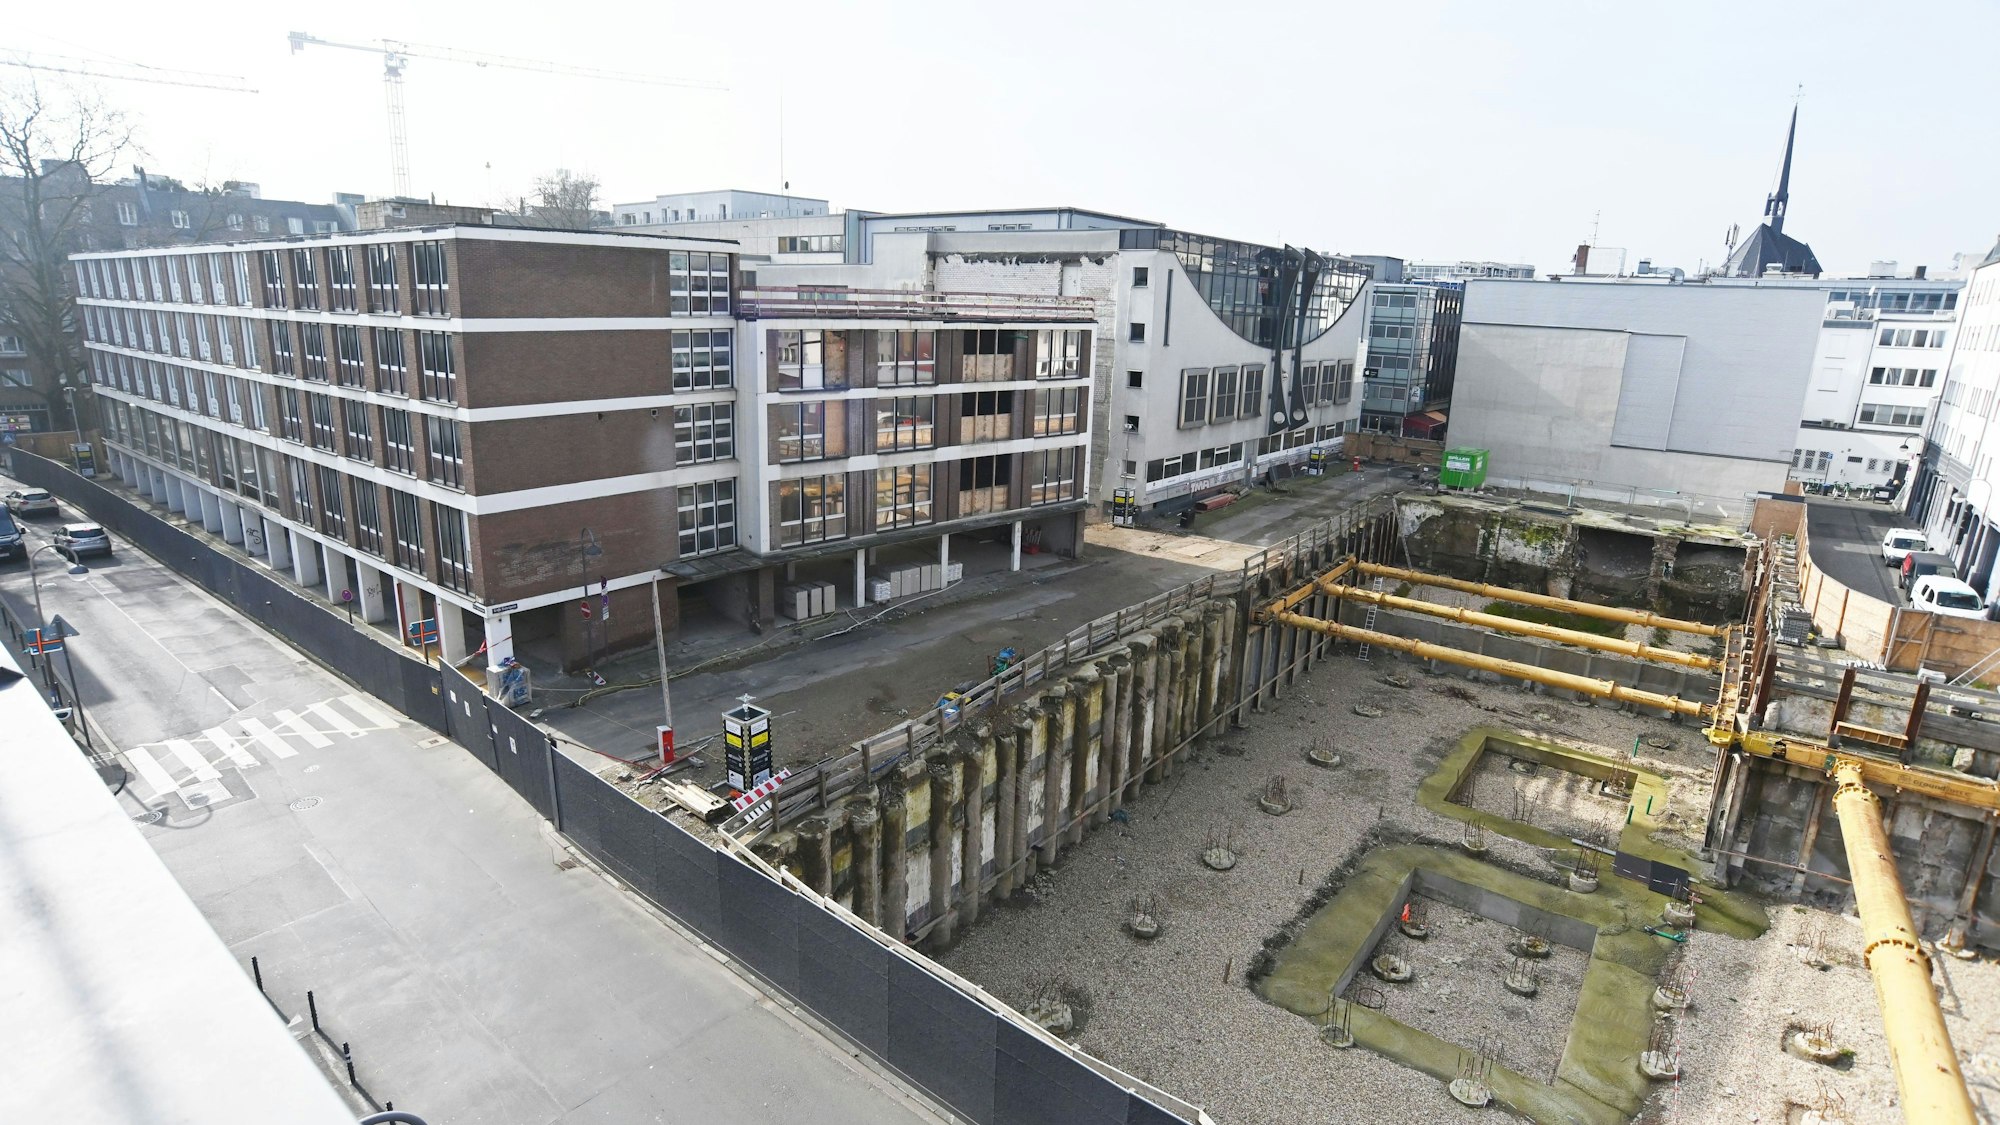 Das Bild zeigt eine Baustelle mit mehreren Gebäuden und einer Baugrube.